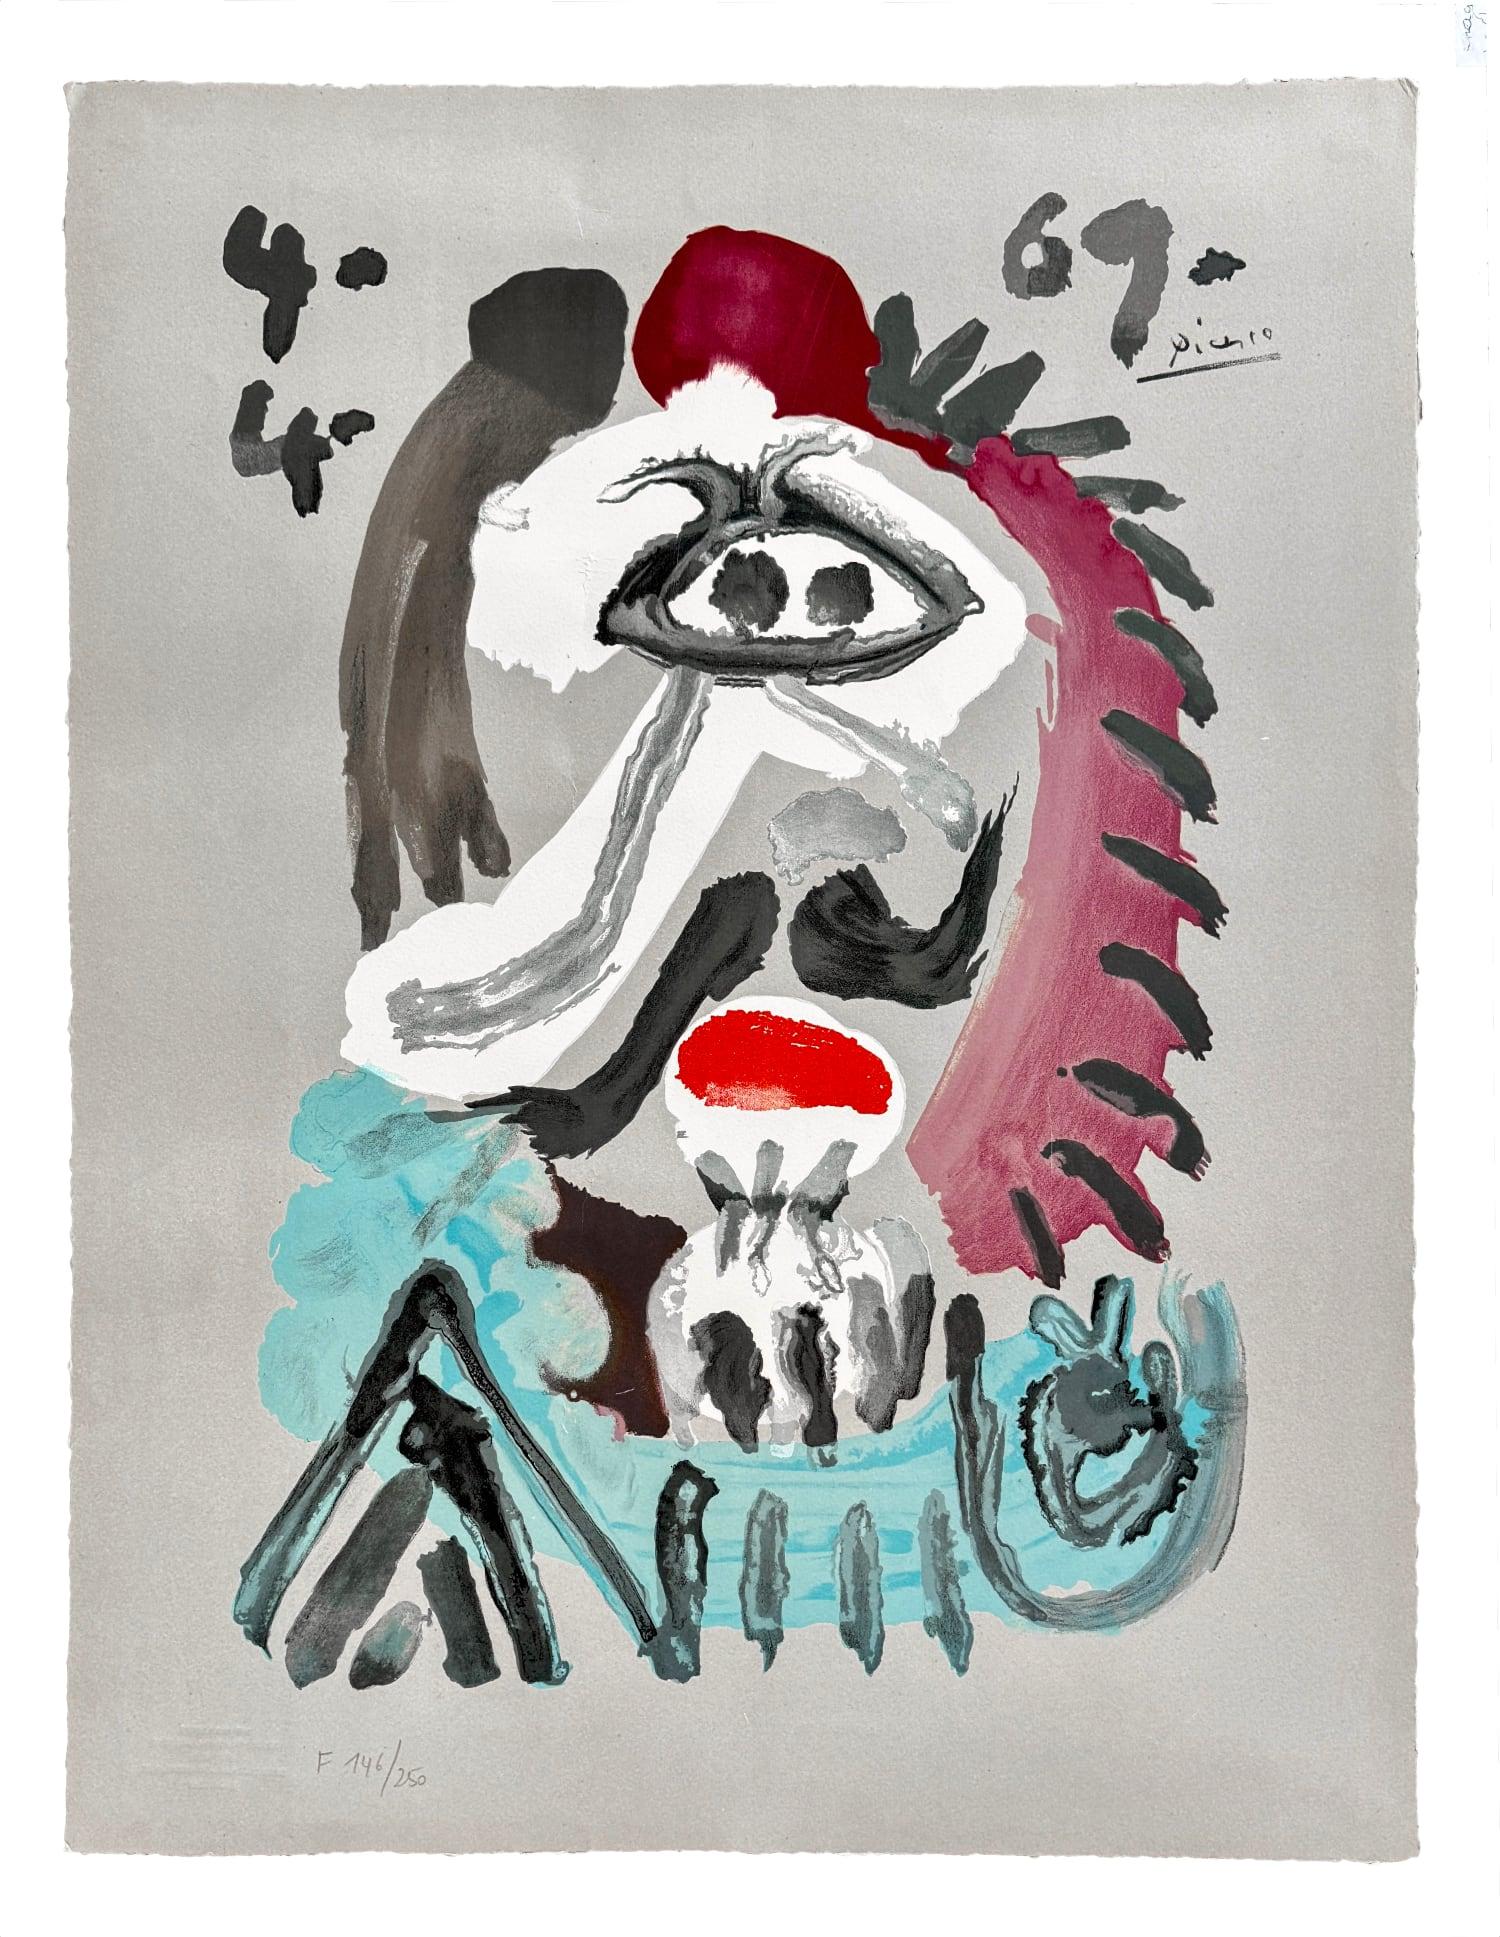 after Pablo Picasso - Portraits Imaginaires 4.4.69